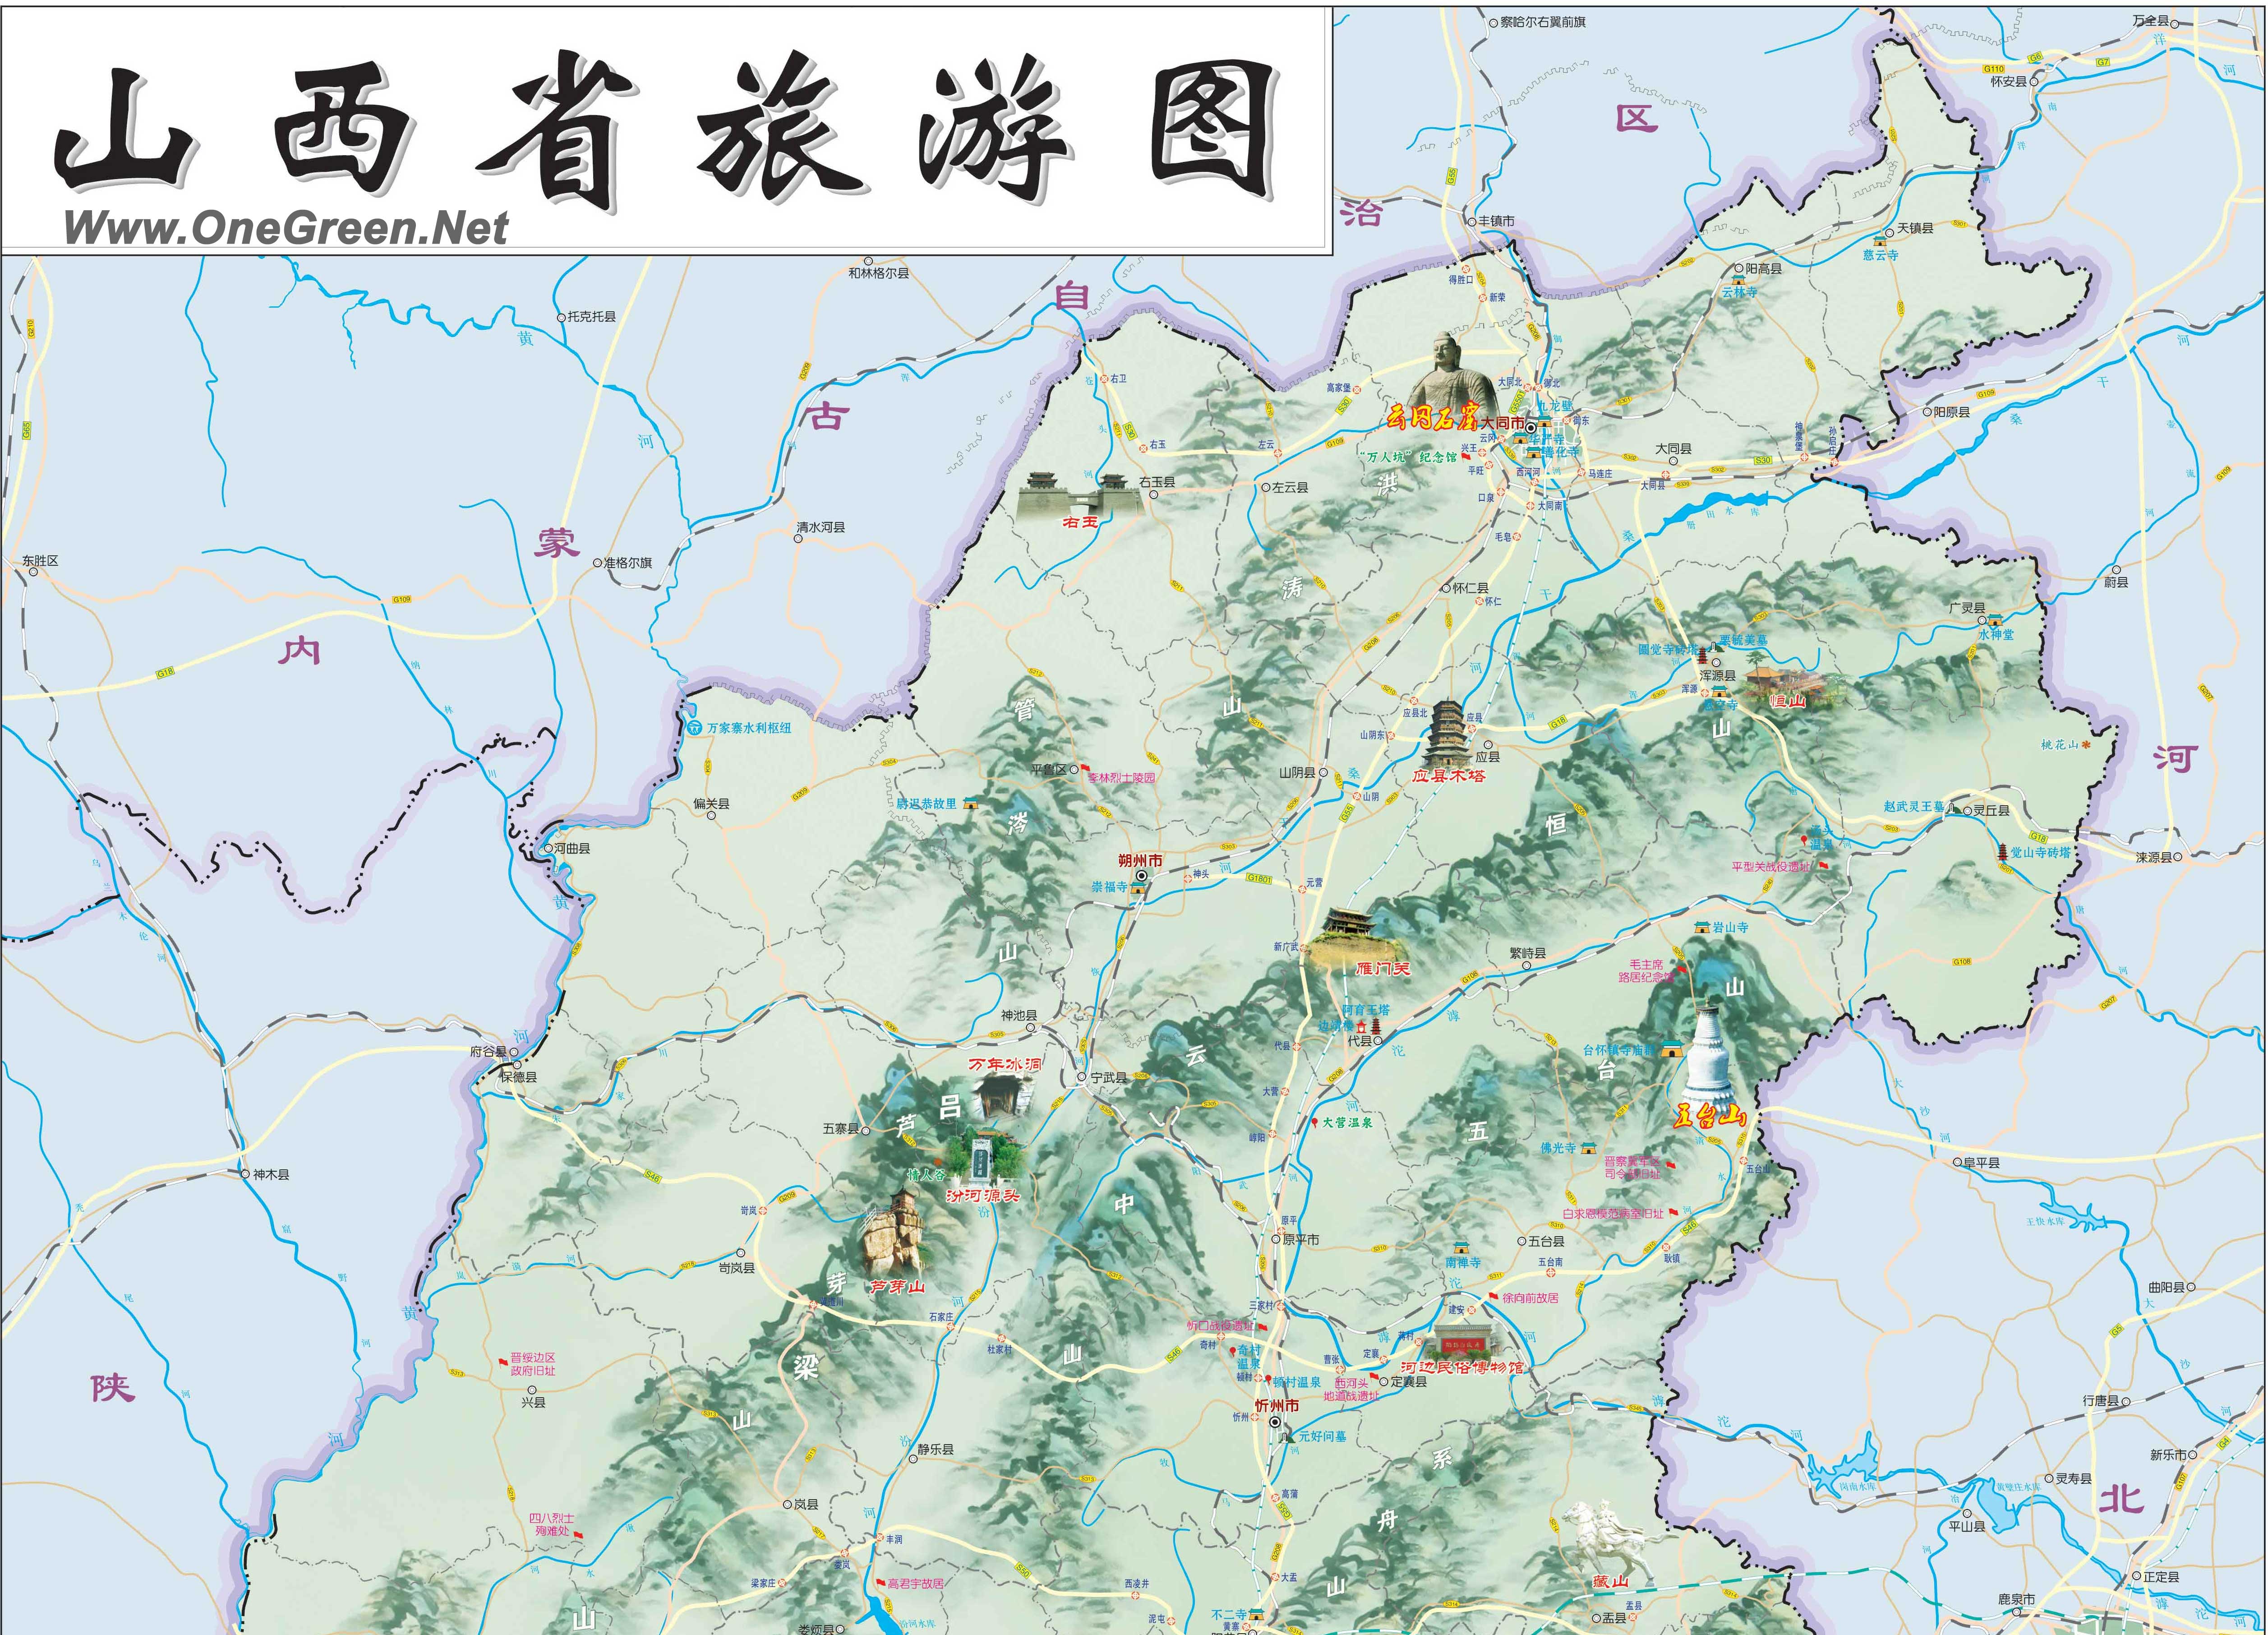 山西大同地图这里锏惧害鍦板浘在那里可以找到山西省地图下载?图片